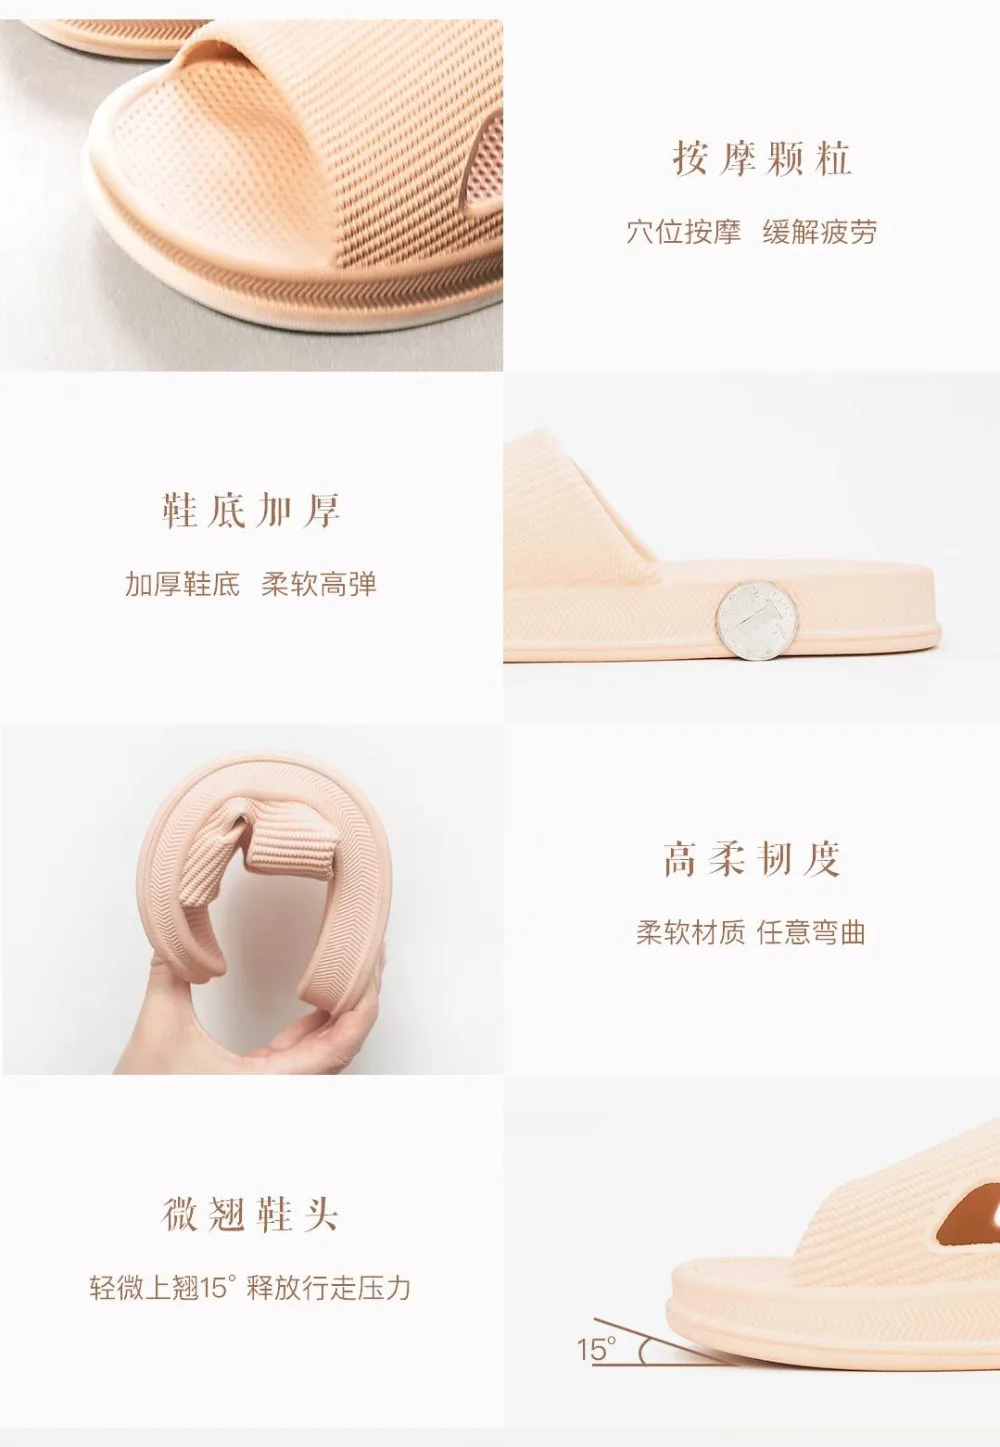 Xiaomi/оригинальные летние спортивные шлепанцы для купания; нескользящие массажные тапочки с прорезями для ног; Эргономичная Мужская обувь; женская обувь